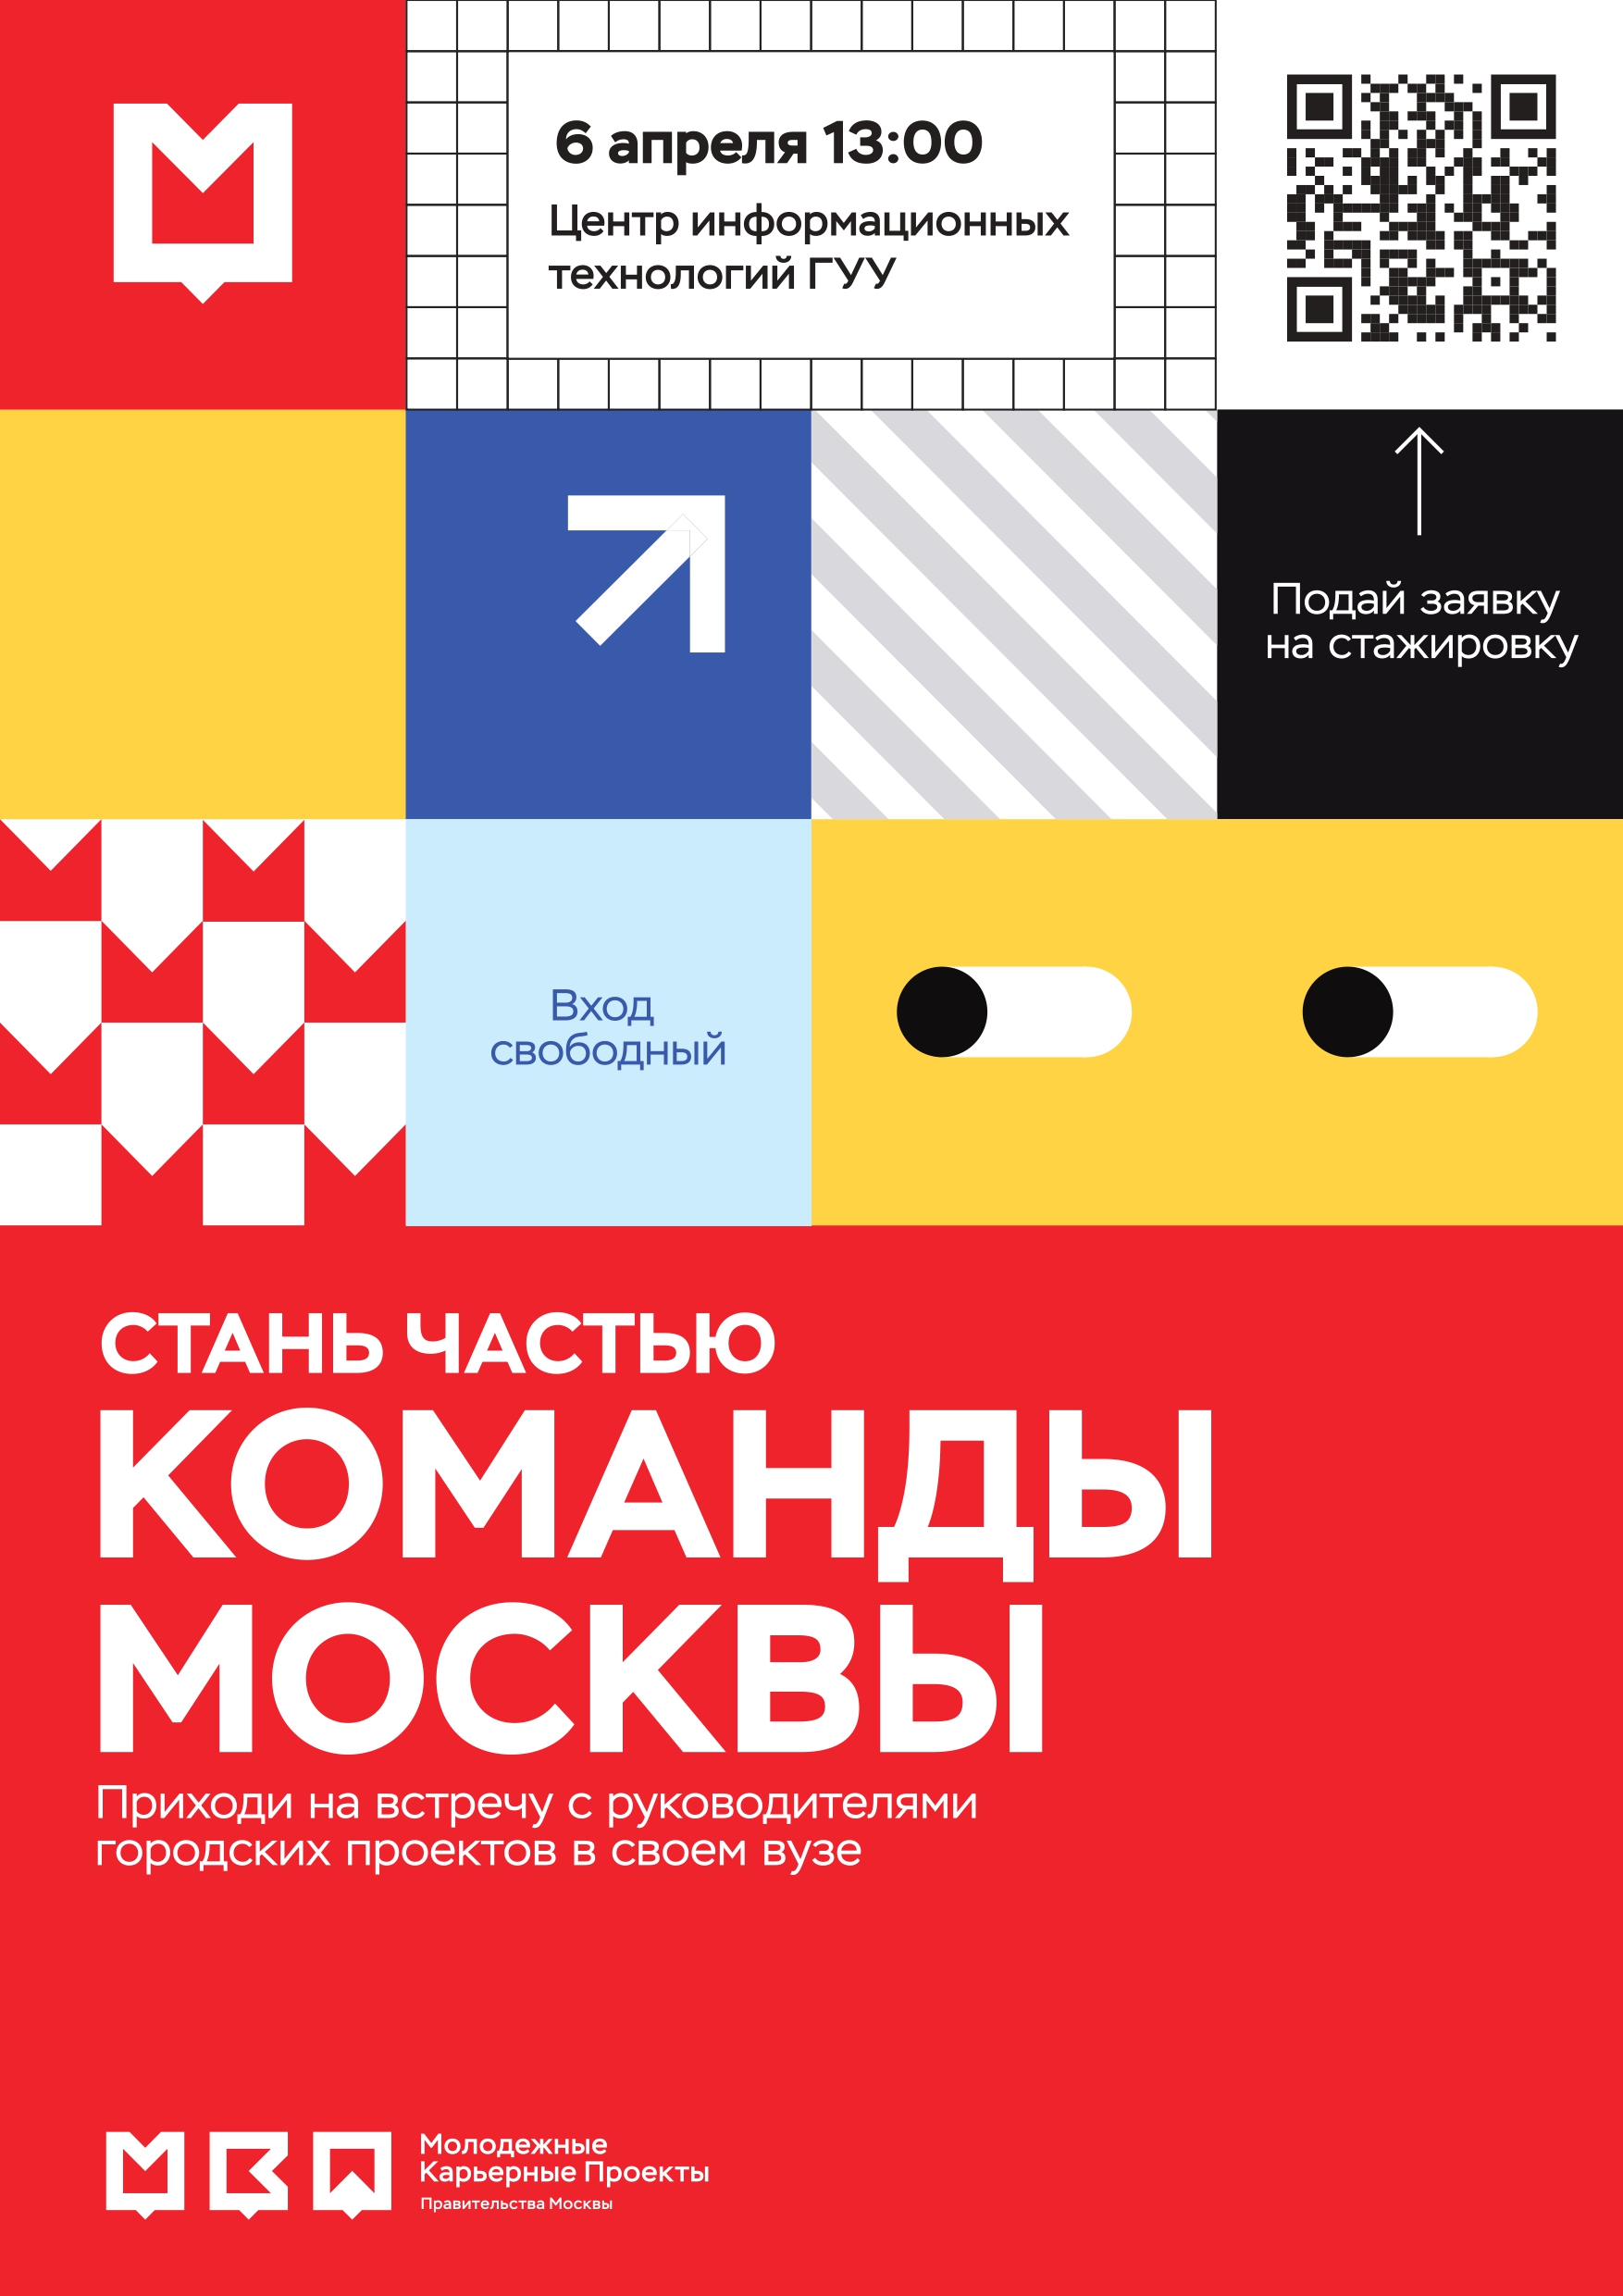 плакат Команда Москвы итог 2 1 1 pages to jpg 0001